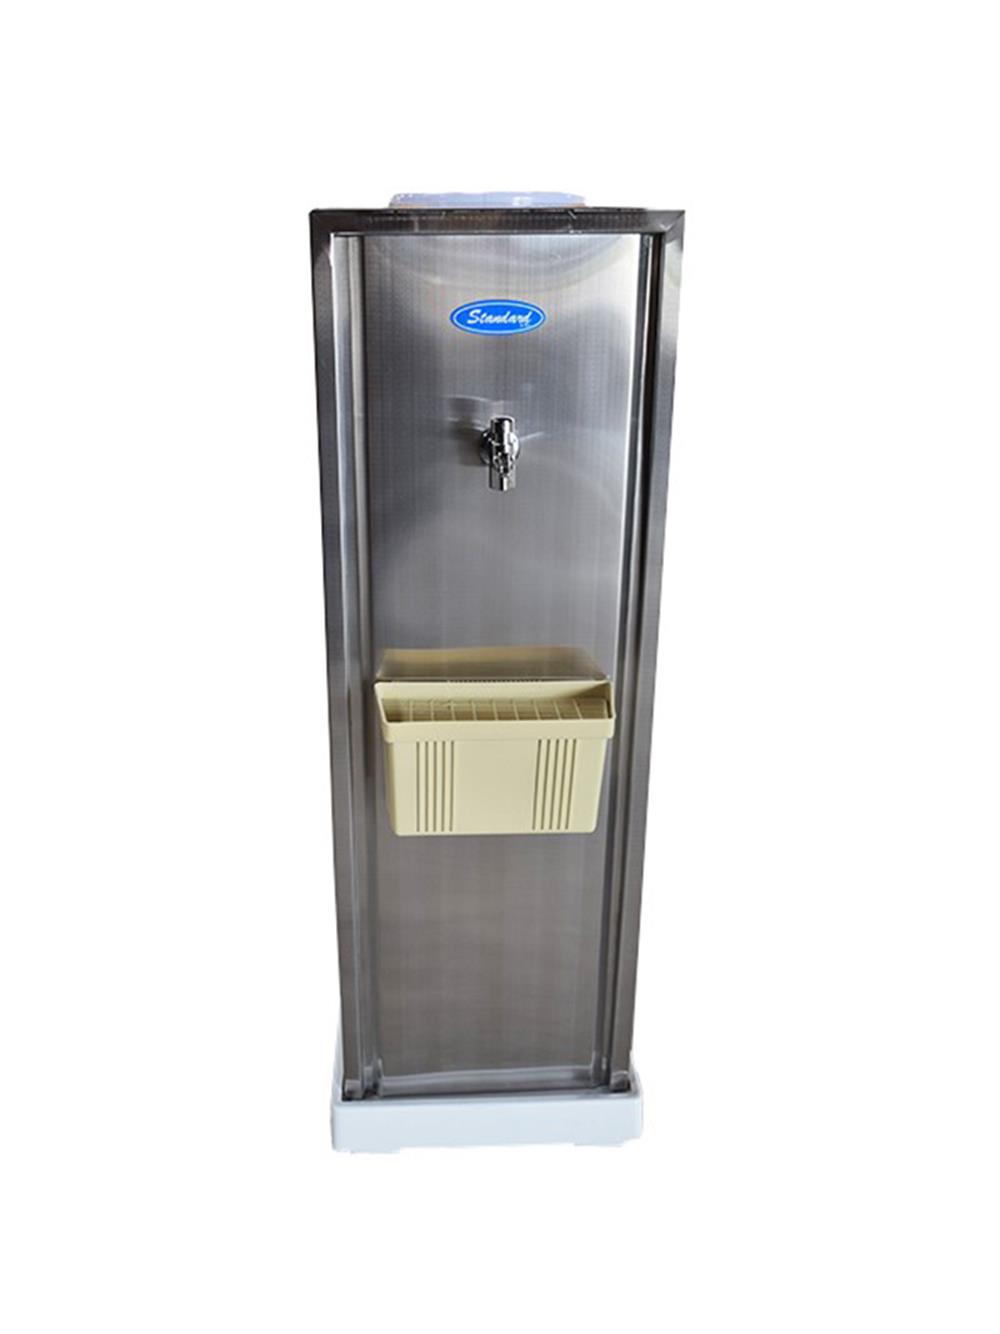 ตู้ทำน้ำเย็น สแตนเลส ขวดคว่ำ, เครื่องทำน้ำเย็น สแตนเลส ขวดคว่ำ (ฟรีขวดคว่ำขนาด 18 ลิตร),ตู้ทำน้ำเย็น สแตนเลส, ตู้ทำน้ำเย็น, ตู้ทำน้ำดื่ม, เครื่องทำน้ำเย็น, เครื่องทำน้ำเย็นสแตนแลส, สแตนเลส,Standard By Rwc,Machinery and Process Equipment/Coolers